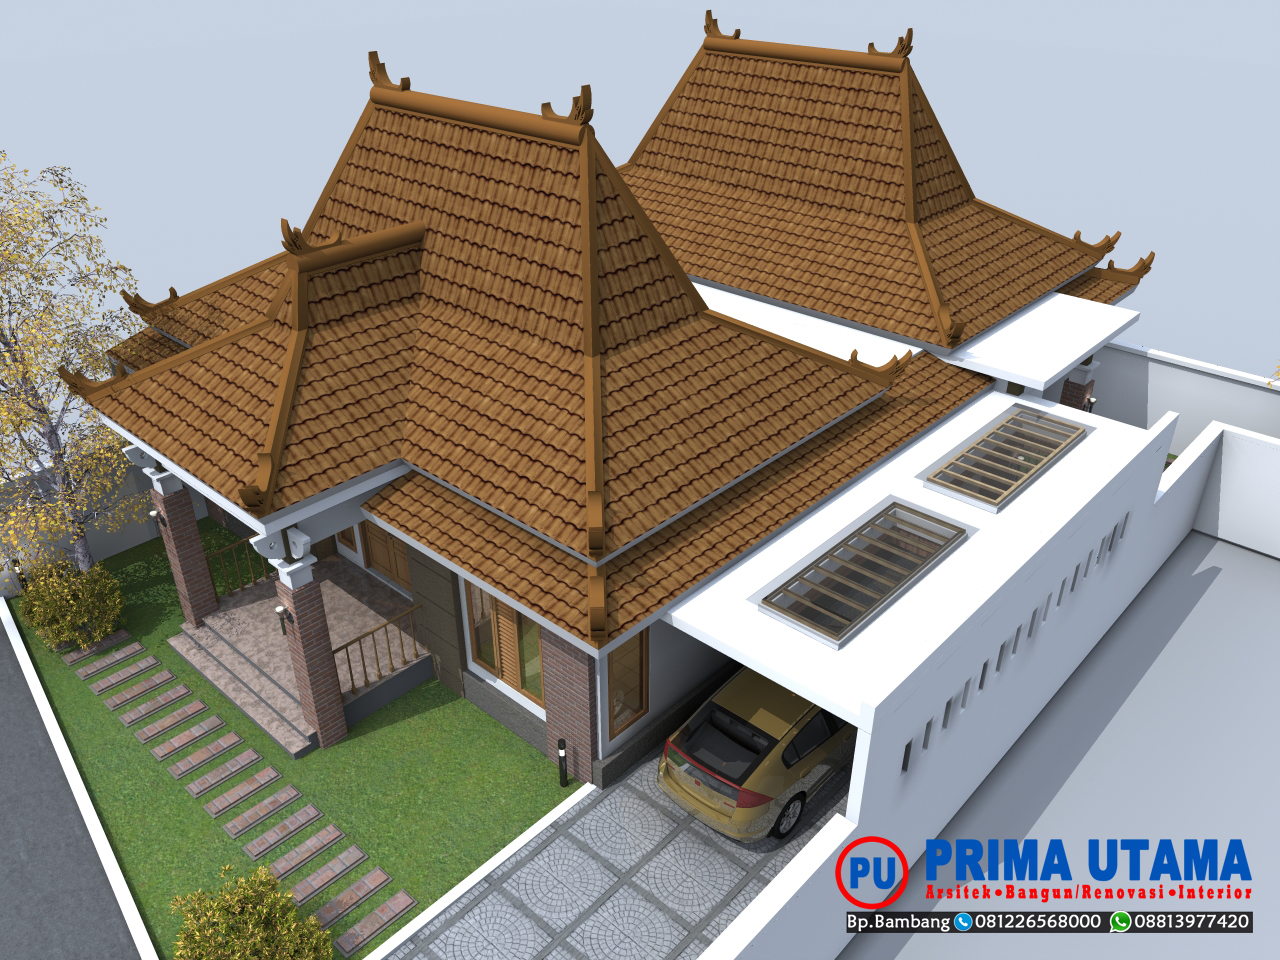 Gambar Desain Rumah Joglo Modern Desain Rumah Indonesia